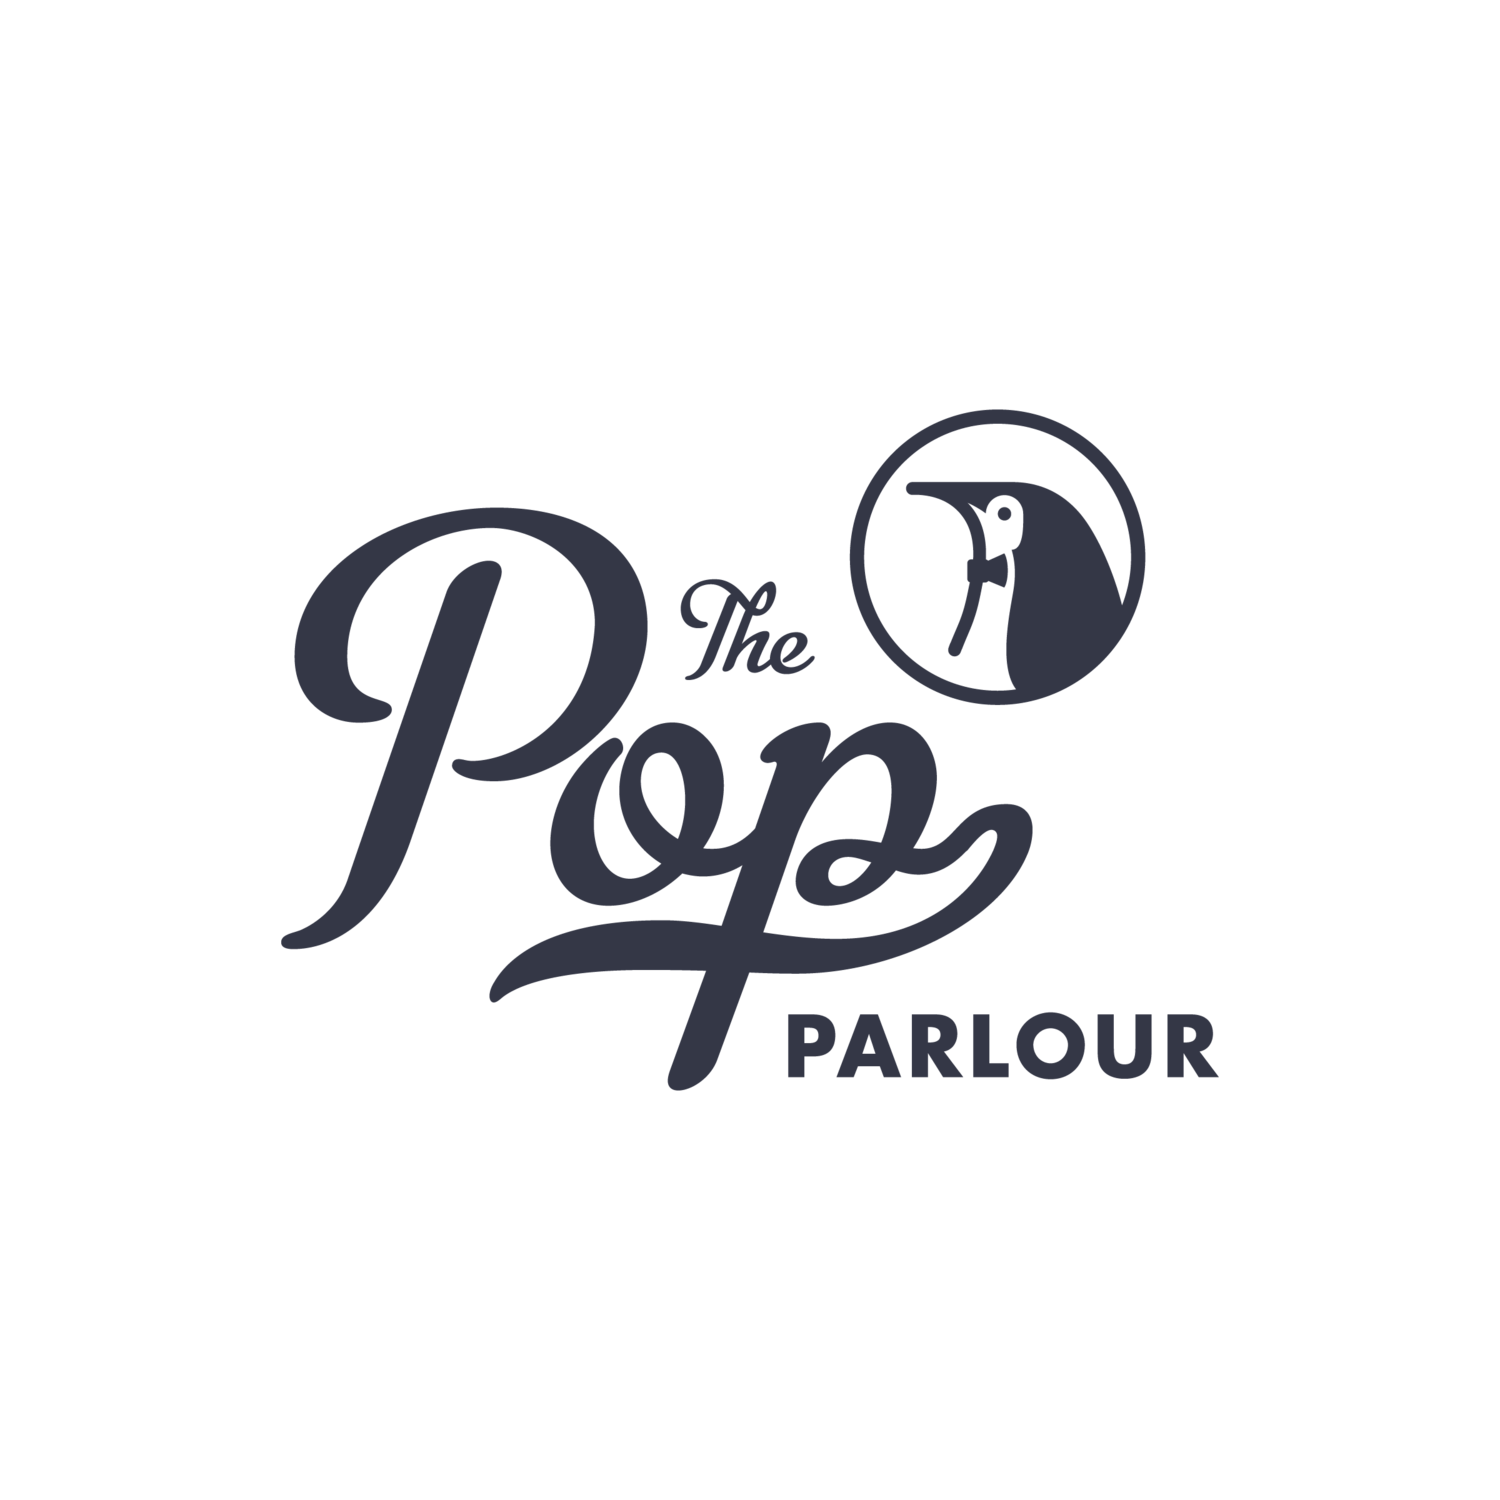 The Pop Parlour